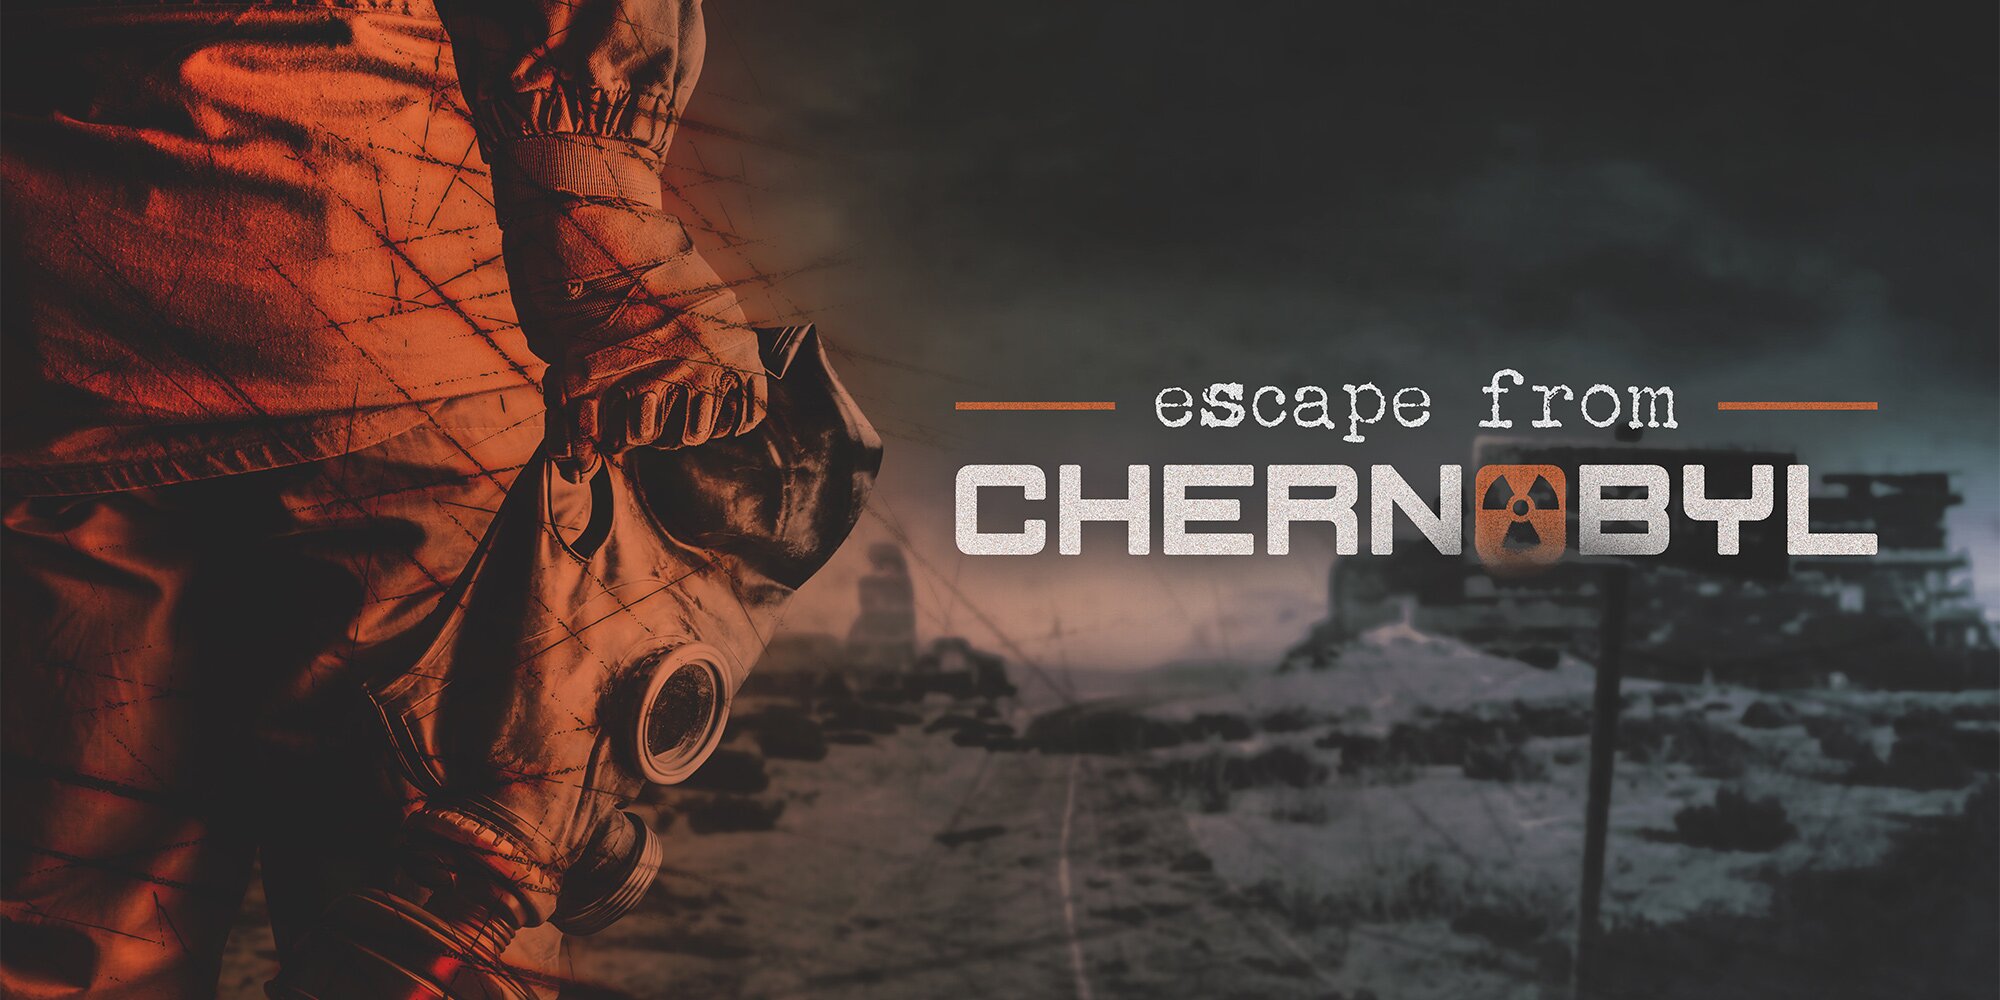 Úniková hra Chernobyl pro 2 nebo 3 osoby